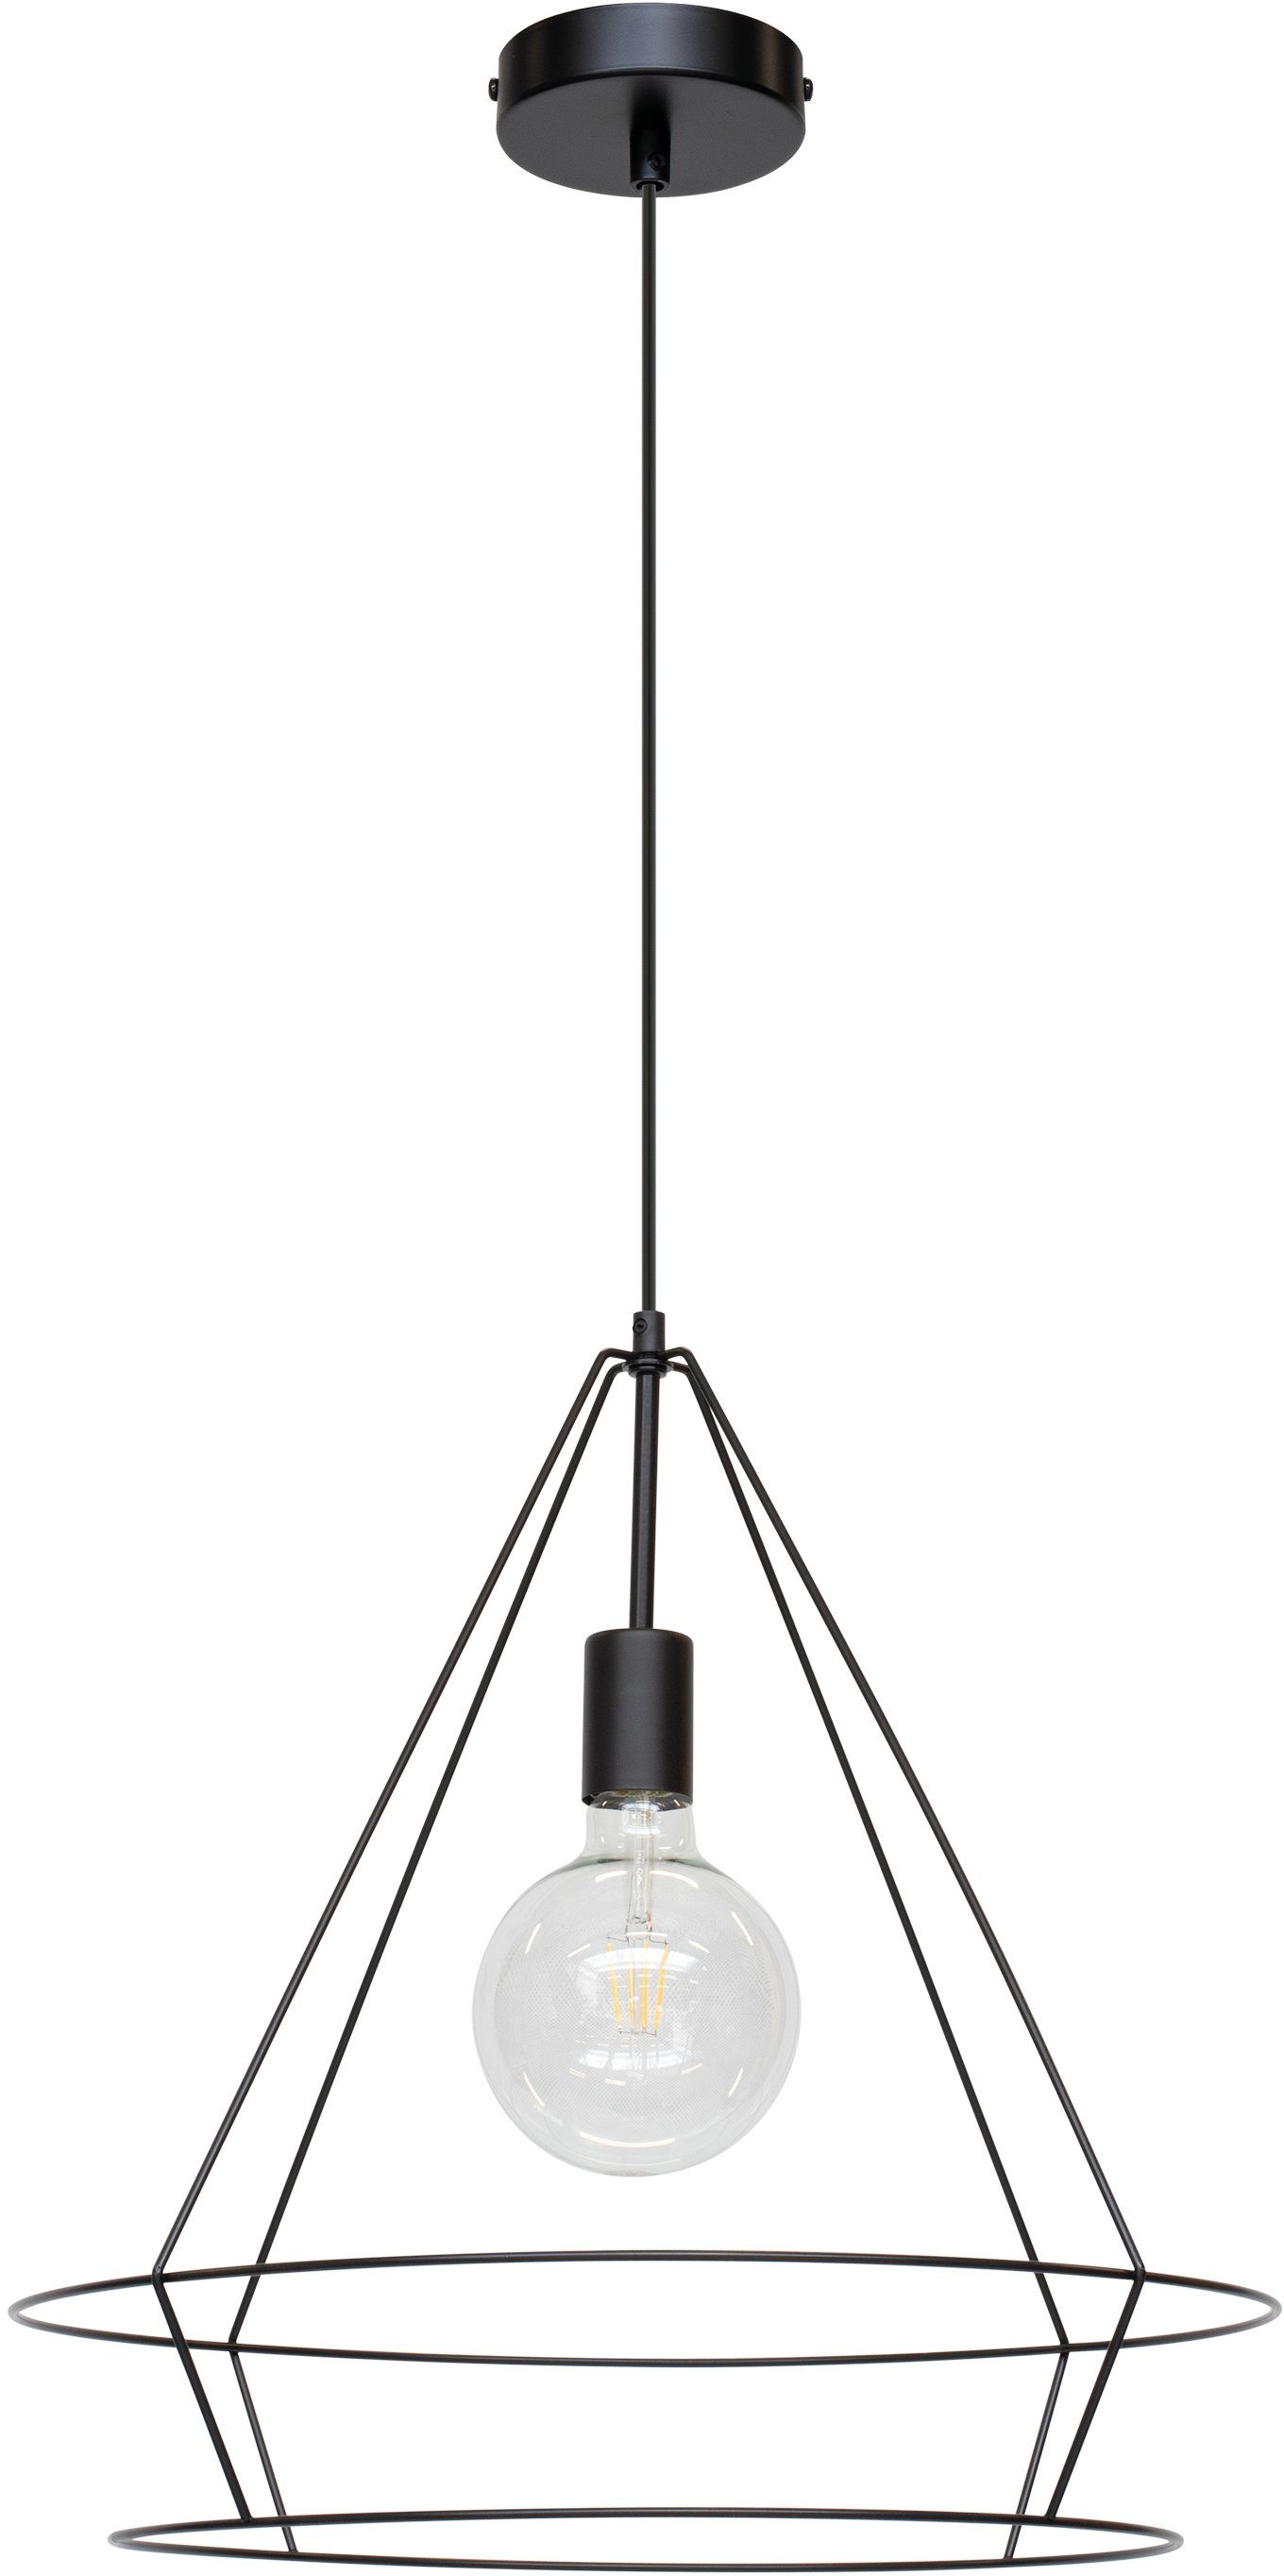 BRITOP LIGHTING Hanglamp Casa Triango Decoratieve lamp van metaal, bijpassende LM E27 / exclusief, Made in Europe (1 stuk)